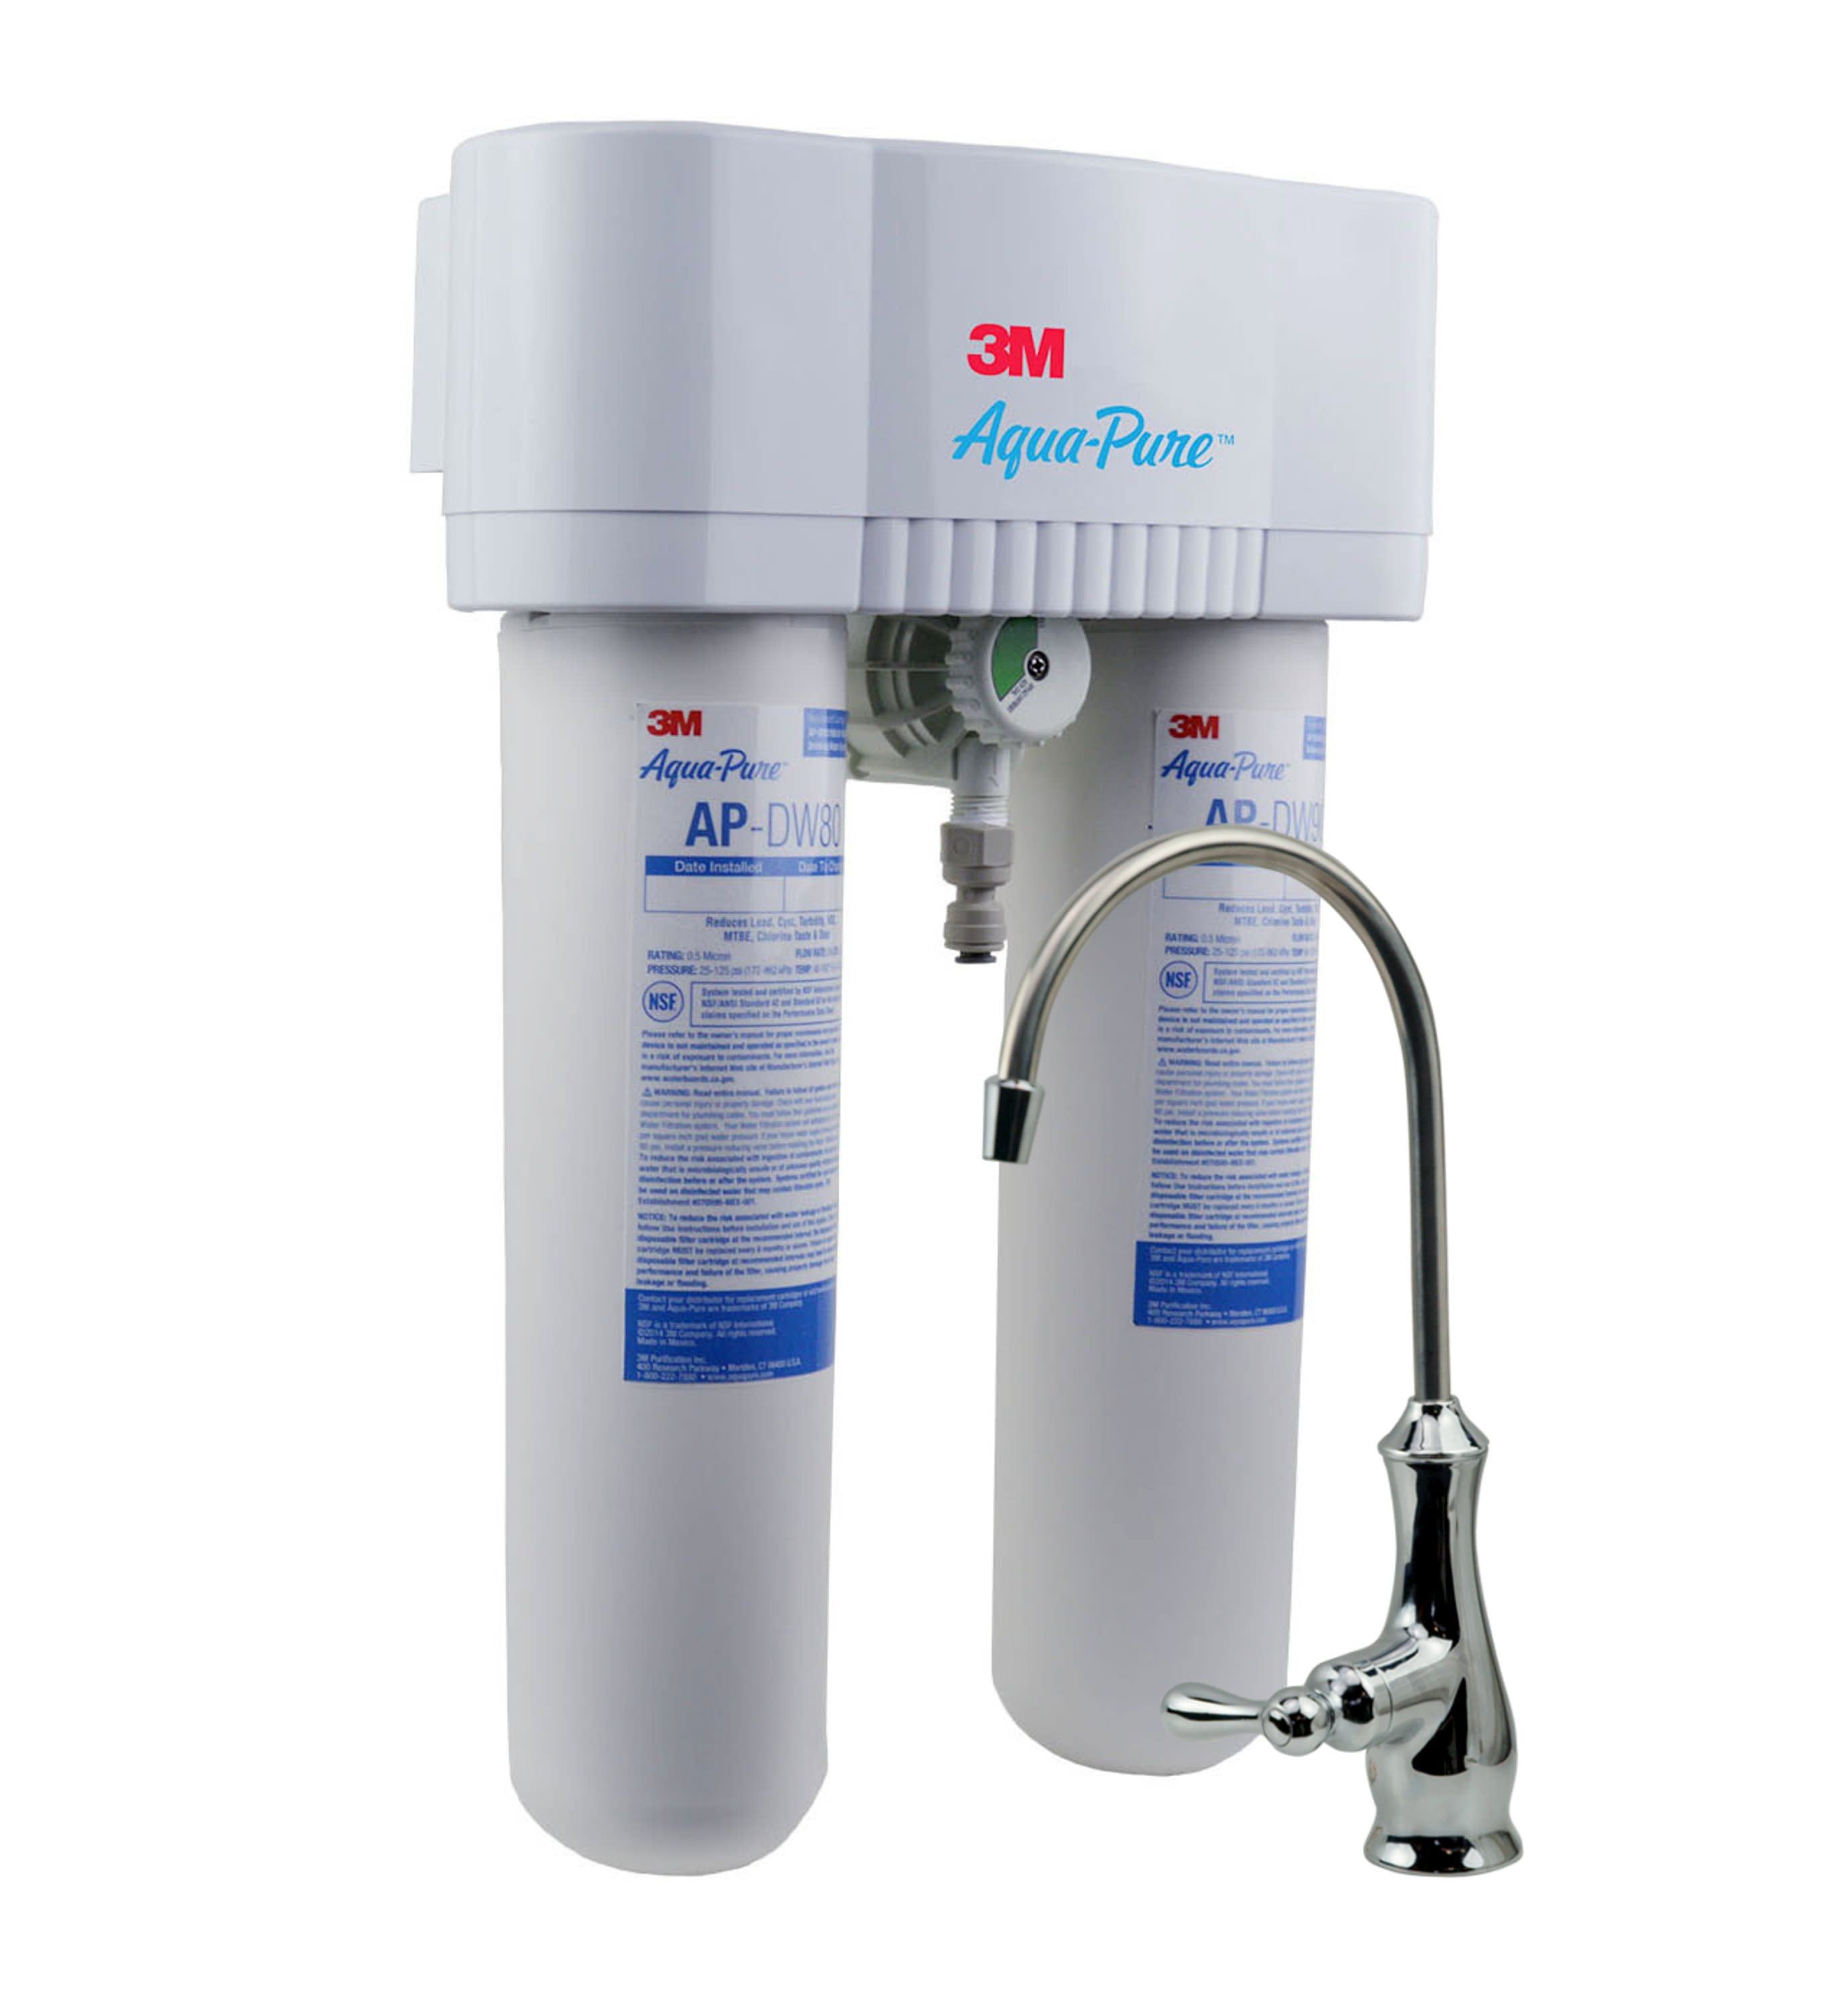 3M Aqua-Pure Under Sink Faucet Water Filter System AP-DWS1000 - Walmart.com